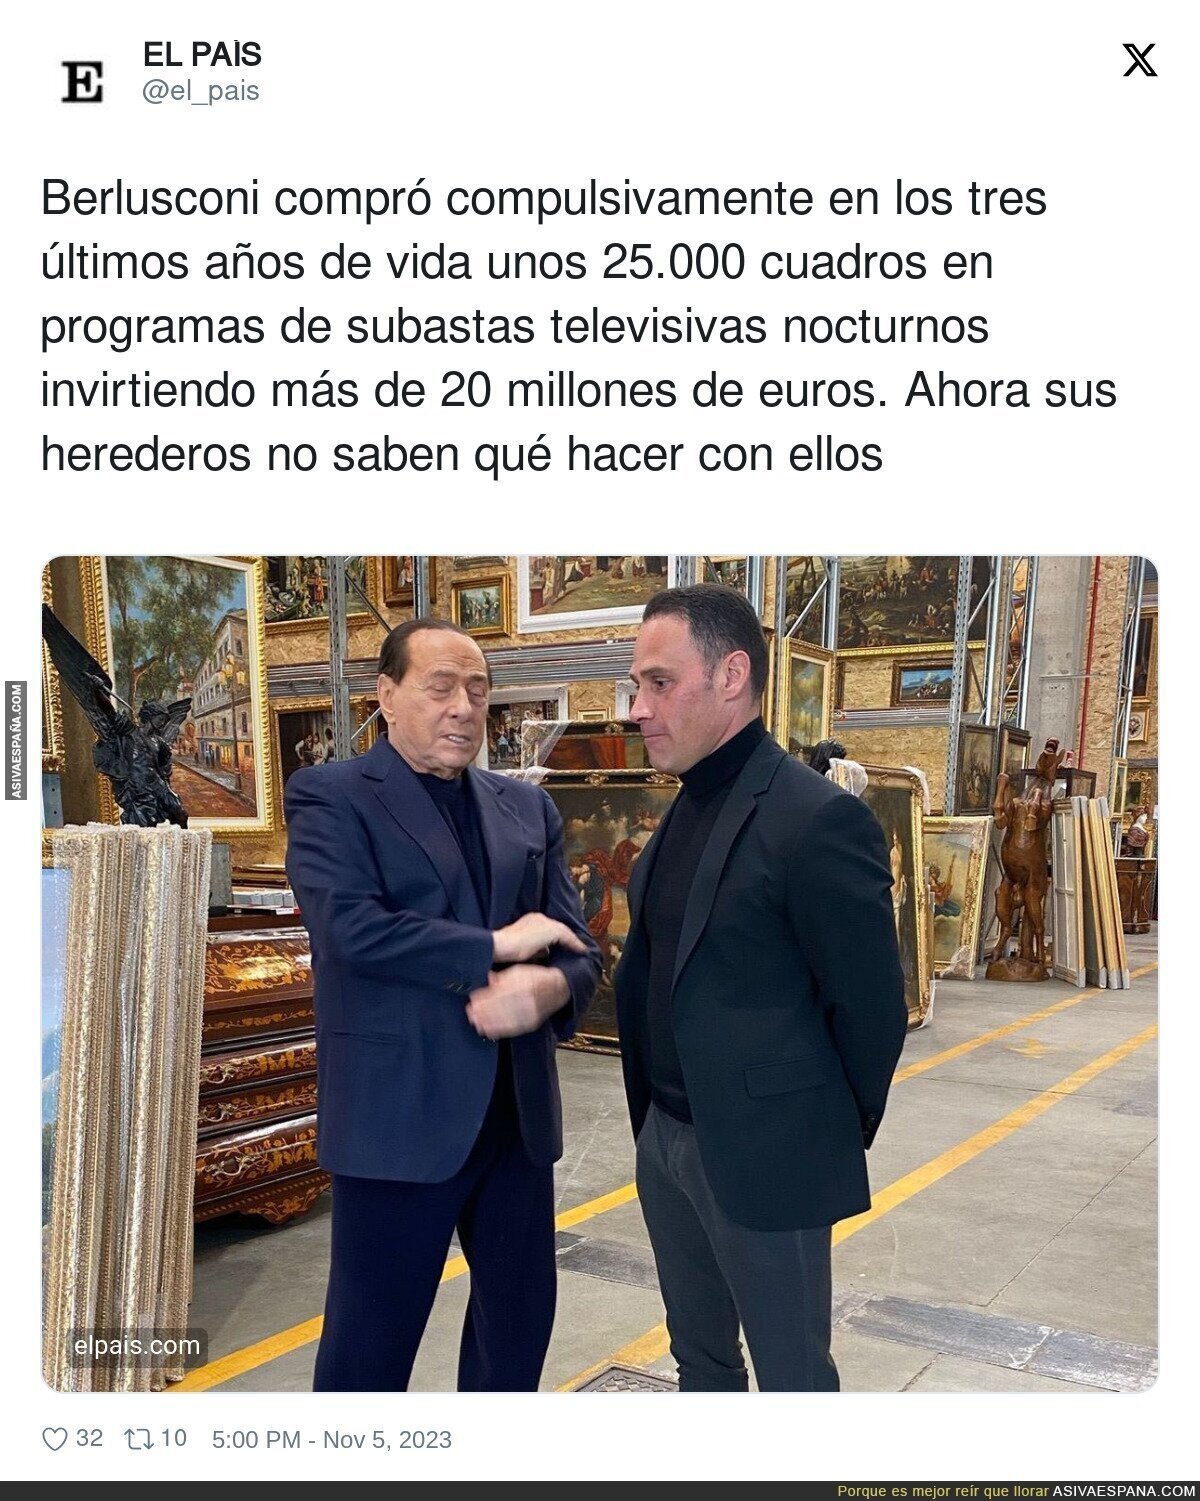 Las compras surrealistas de Berlusconi